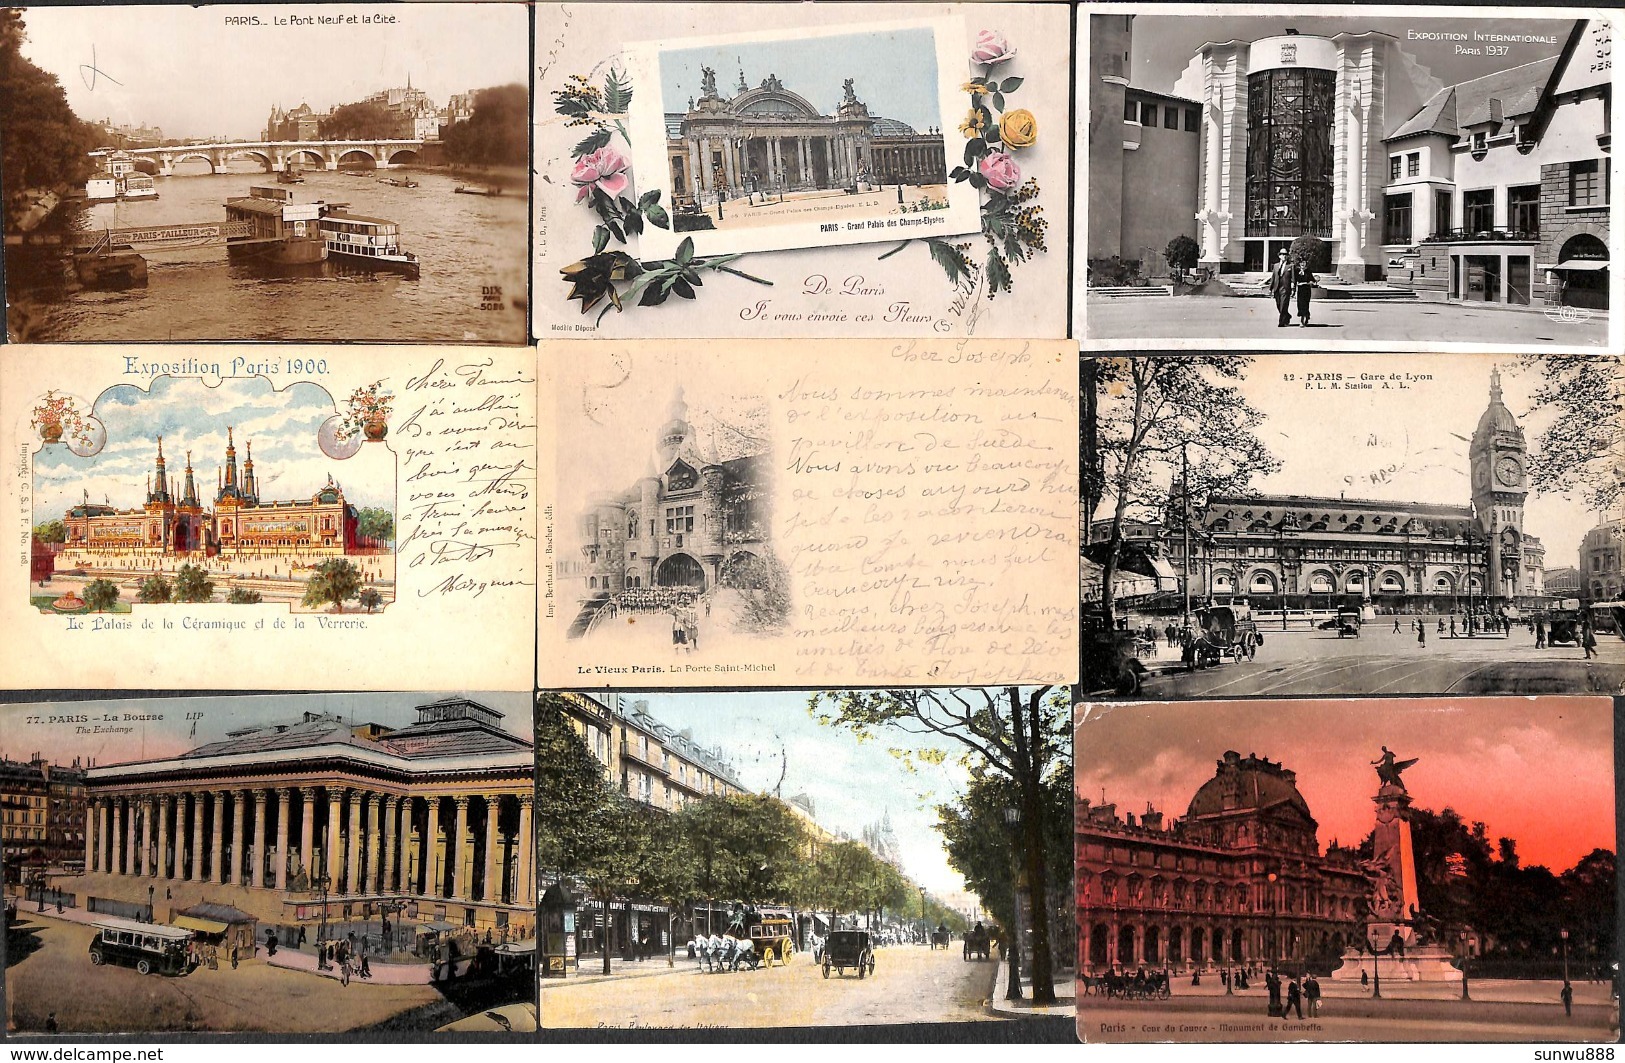 Paris - Lot sélectionné 79 cartes (animée, colorisée, précurseur, gaufrée,...petit prix, voir scans)